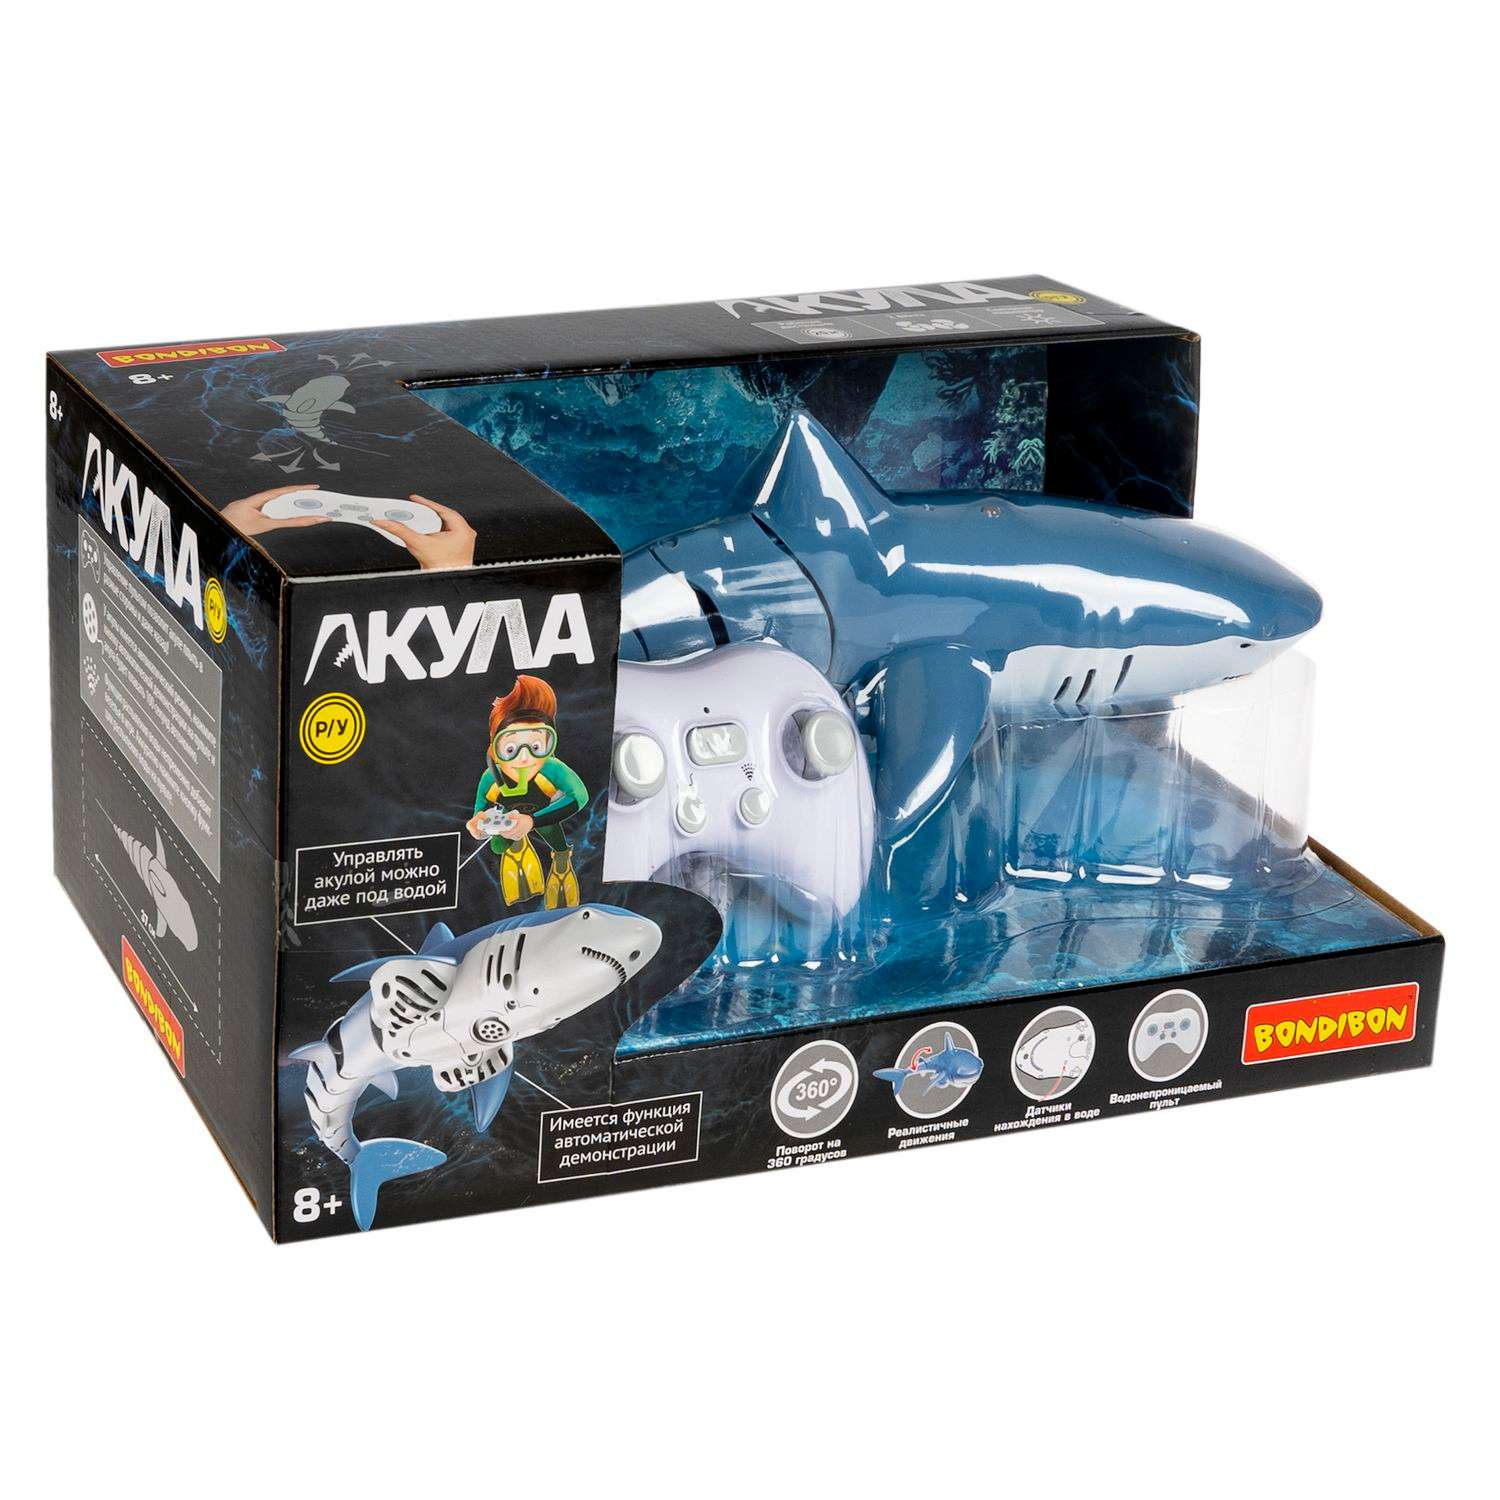 Игрушка радиоуправляемая BONDIBON Робот Акула детская водная игрушка - фото 3